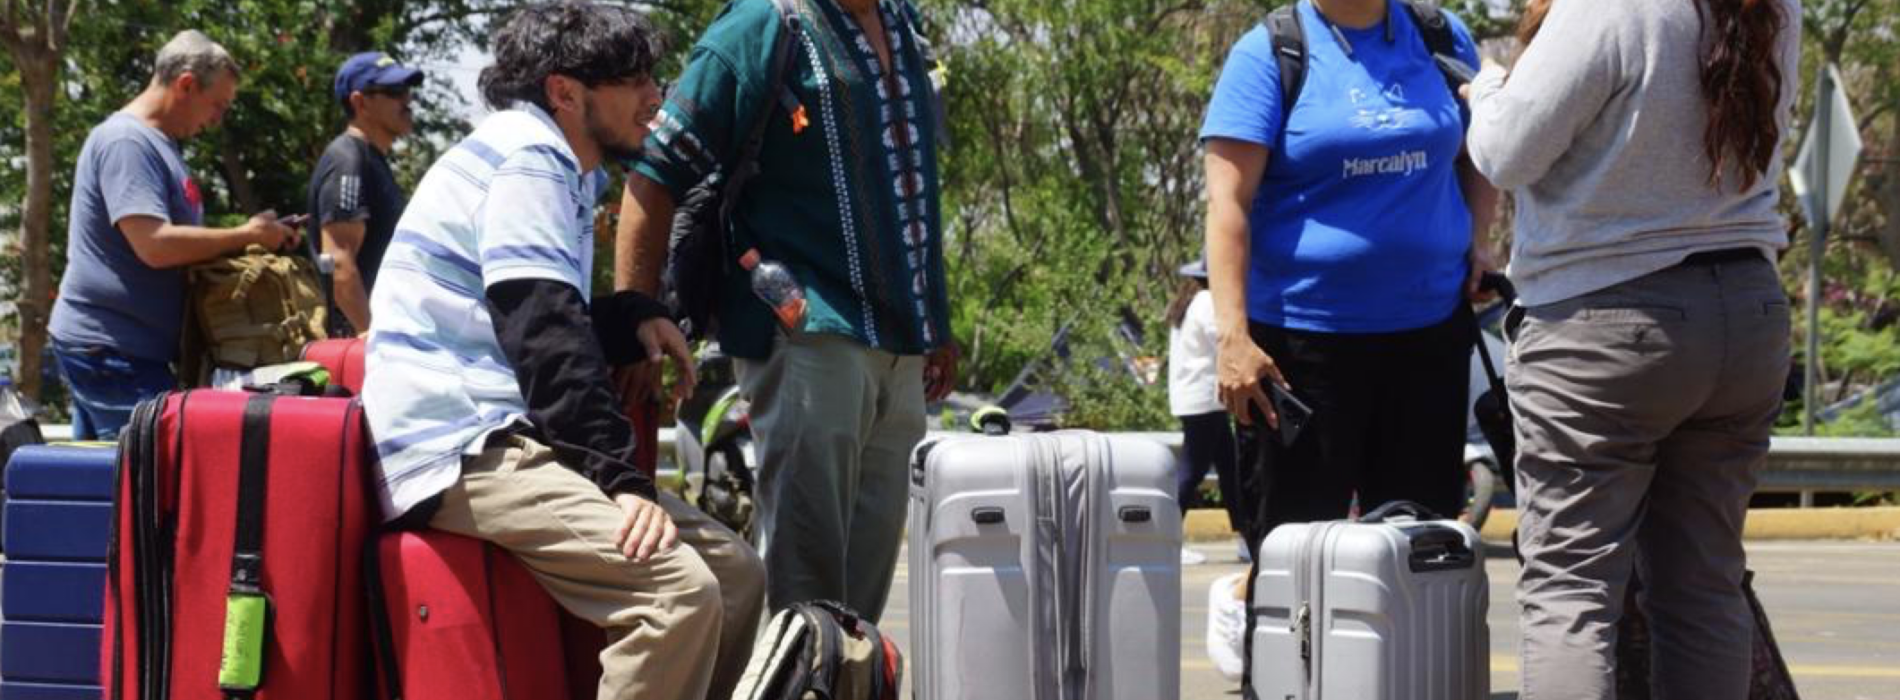 Cierra y suspende vuelos aeropuerto de Oaxaca por bloqueo de maestros de la Sección 22 del SNTE